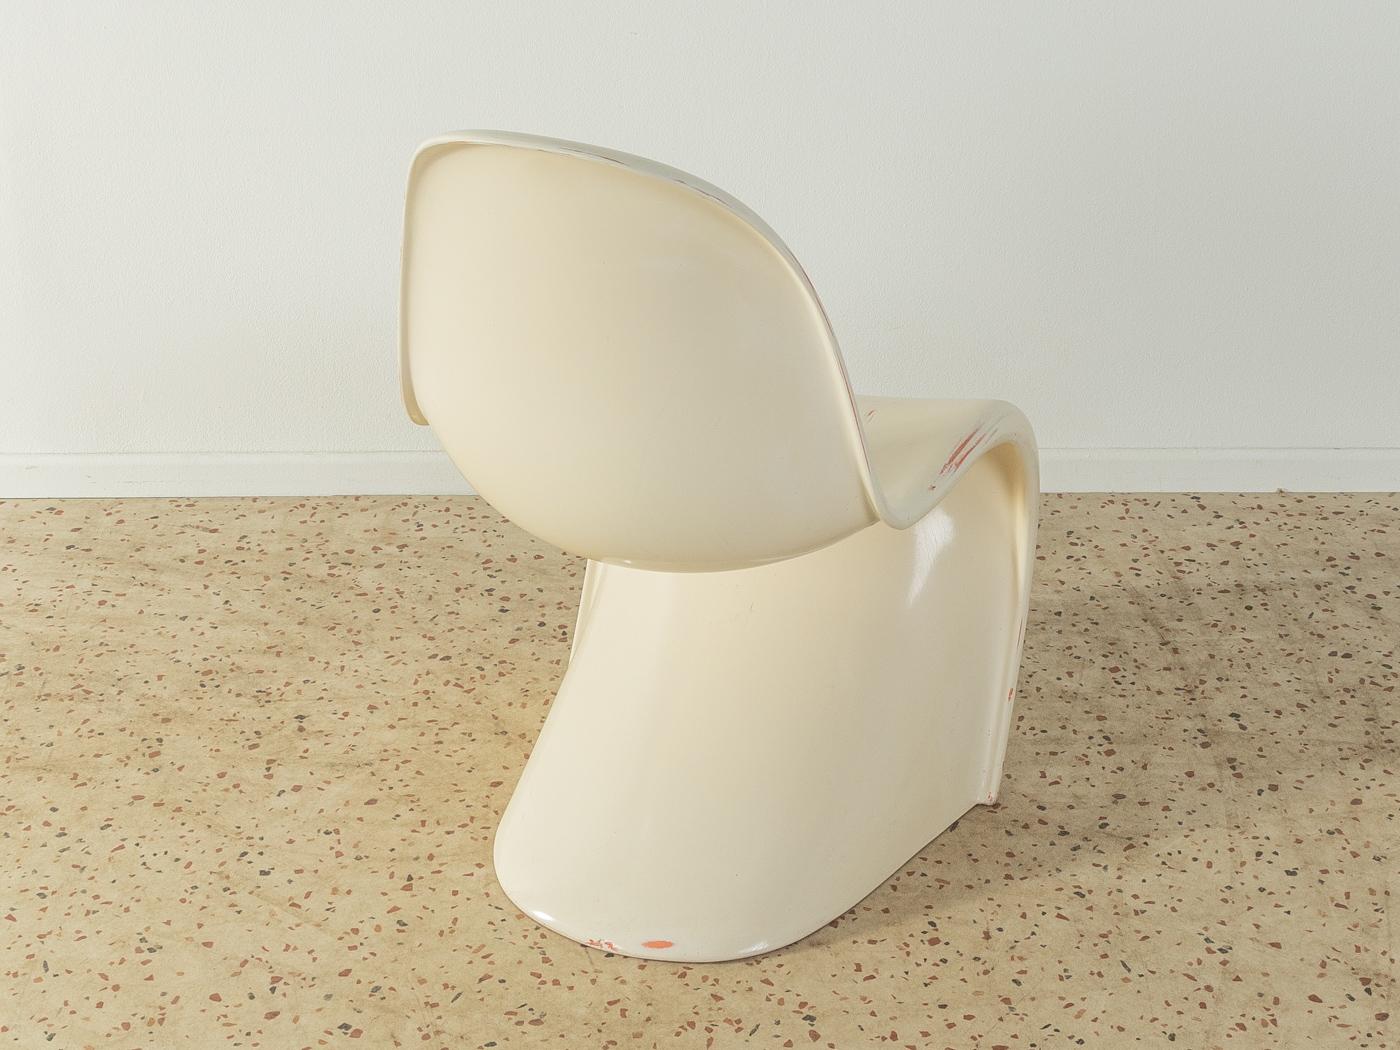 Zeitloser Freischwinger Panton Chair der zweiten Generation (1968-71), entworfen von Verner Panton im Jahr 1959. Hochwertiger Korpus in Cremeweiß aus Polyurethan-Hartschaum. Einzigartiger, fast unberührter Zustand.

Qualitätsmerkmale:
   